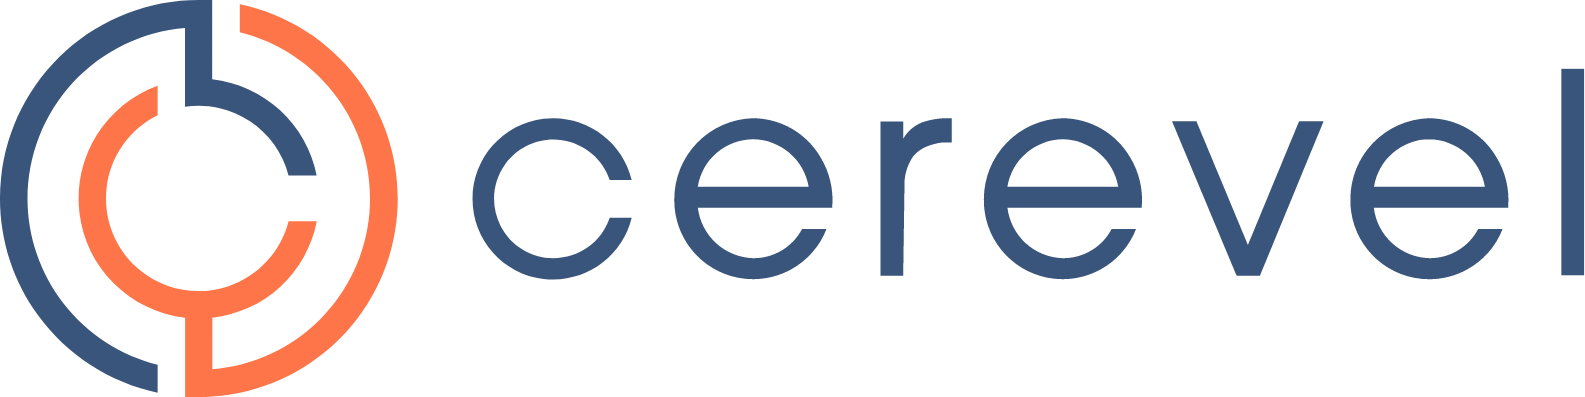 Cerevel Therapeutics logo large (transparent PNG)